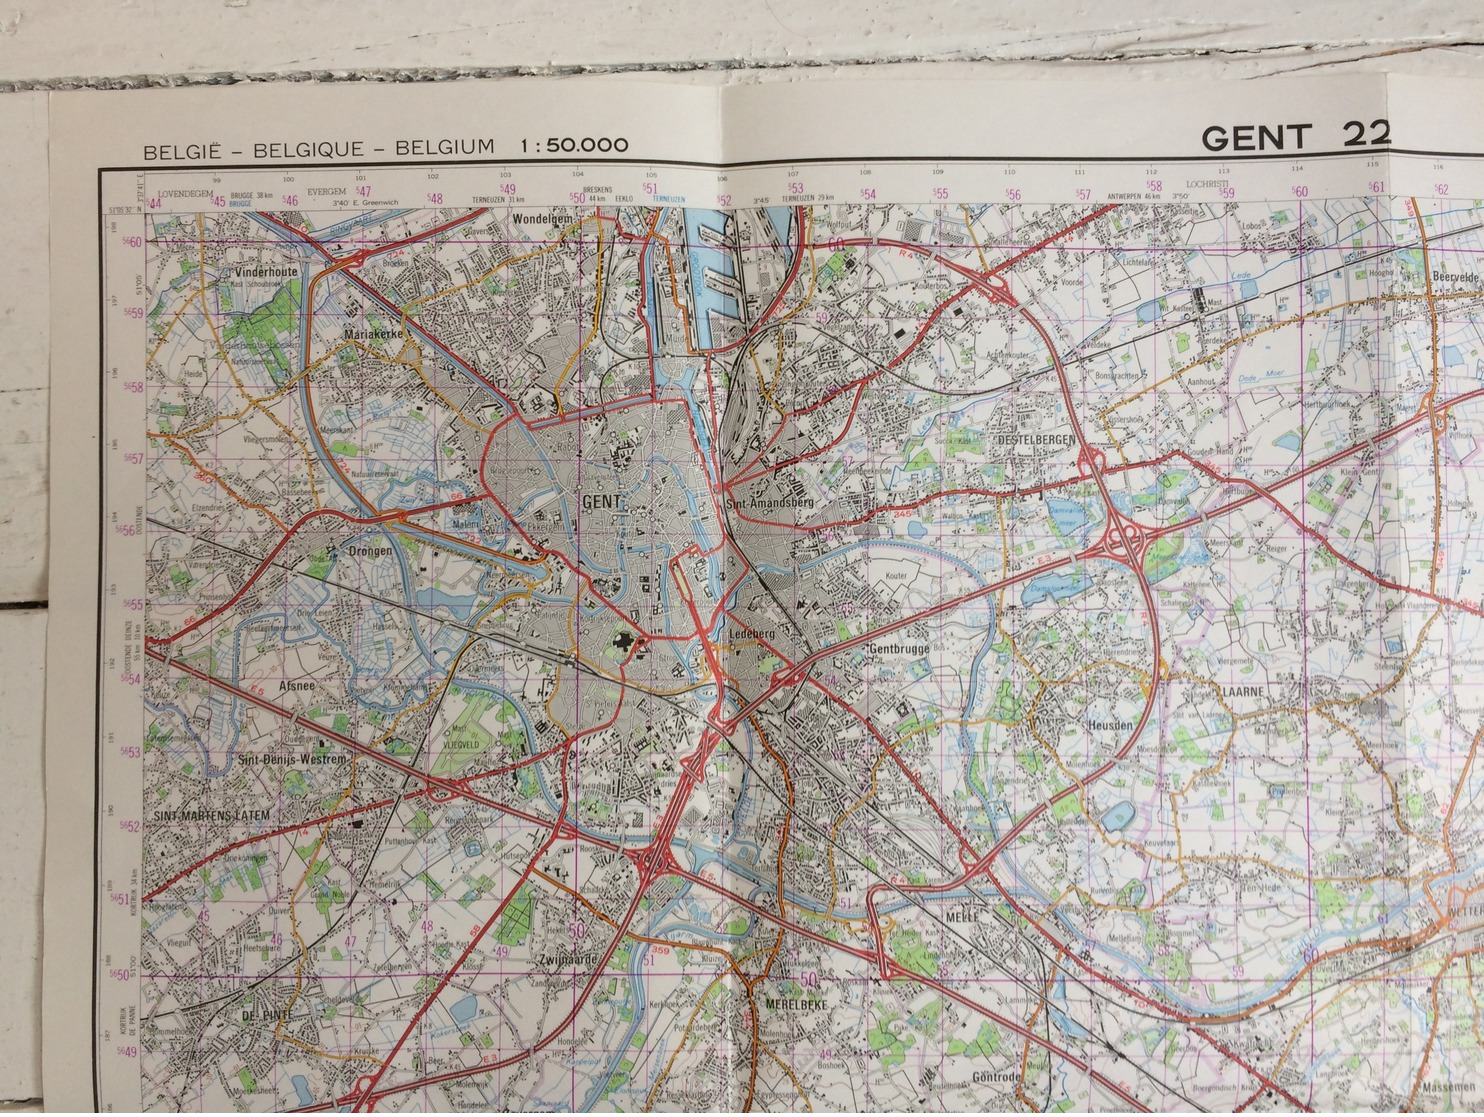 STAFKAART / CARTE D'ETAT MAJOR GENT 22 - 1/50.000 M736 - 1983 - Topographical Maps